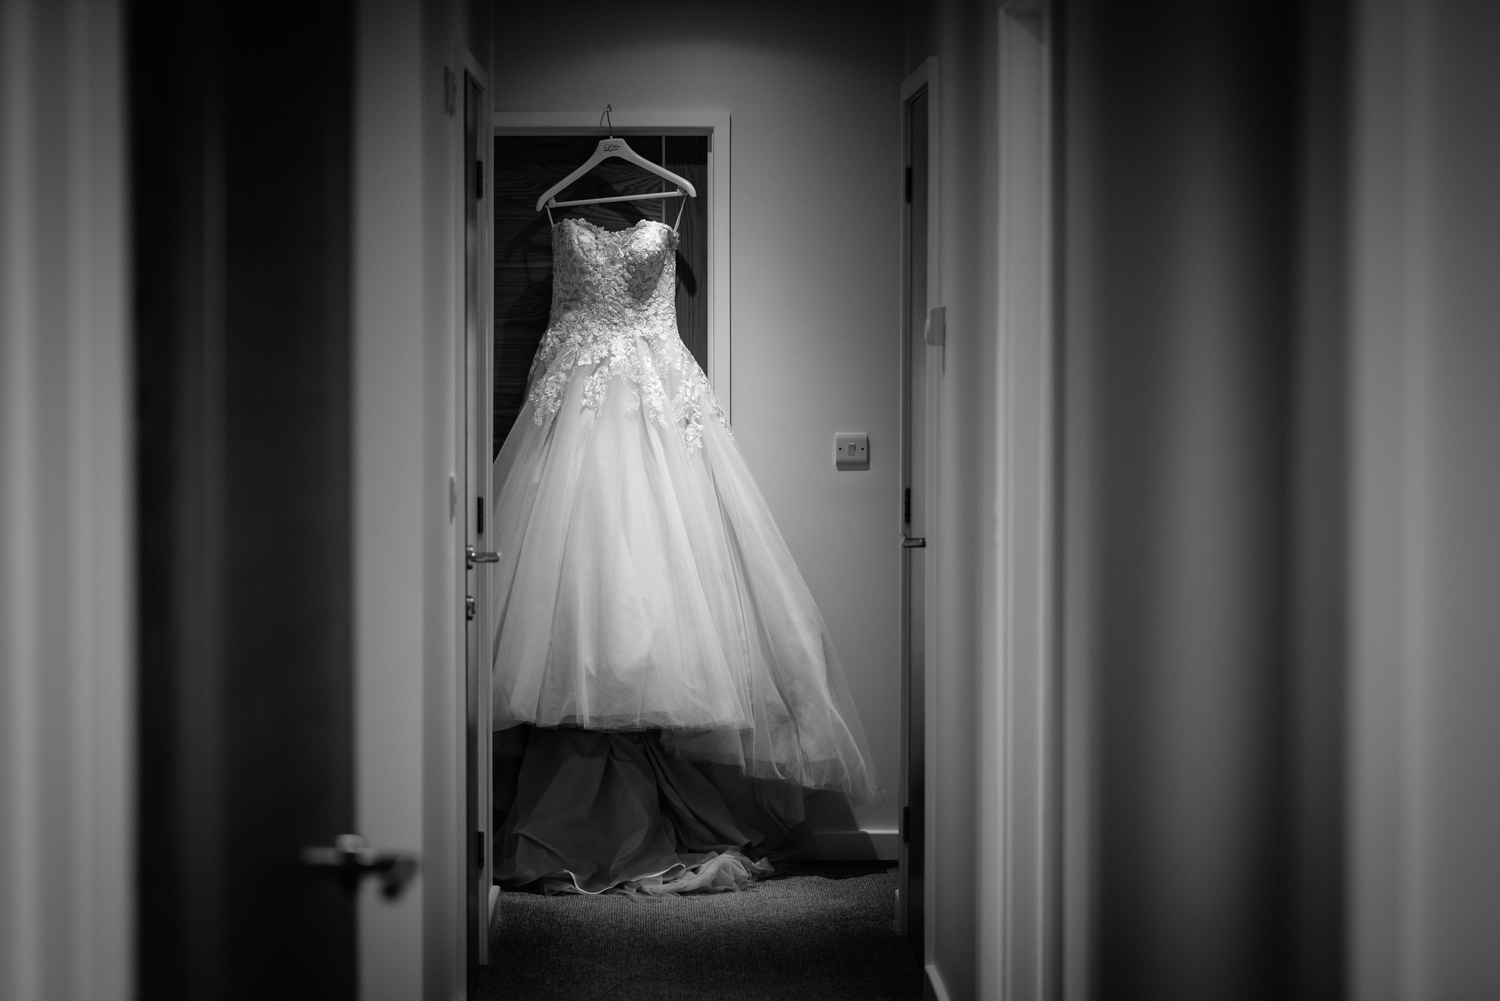 Wedding dress hanging in doorway